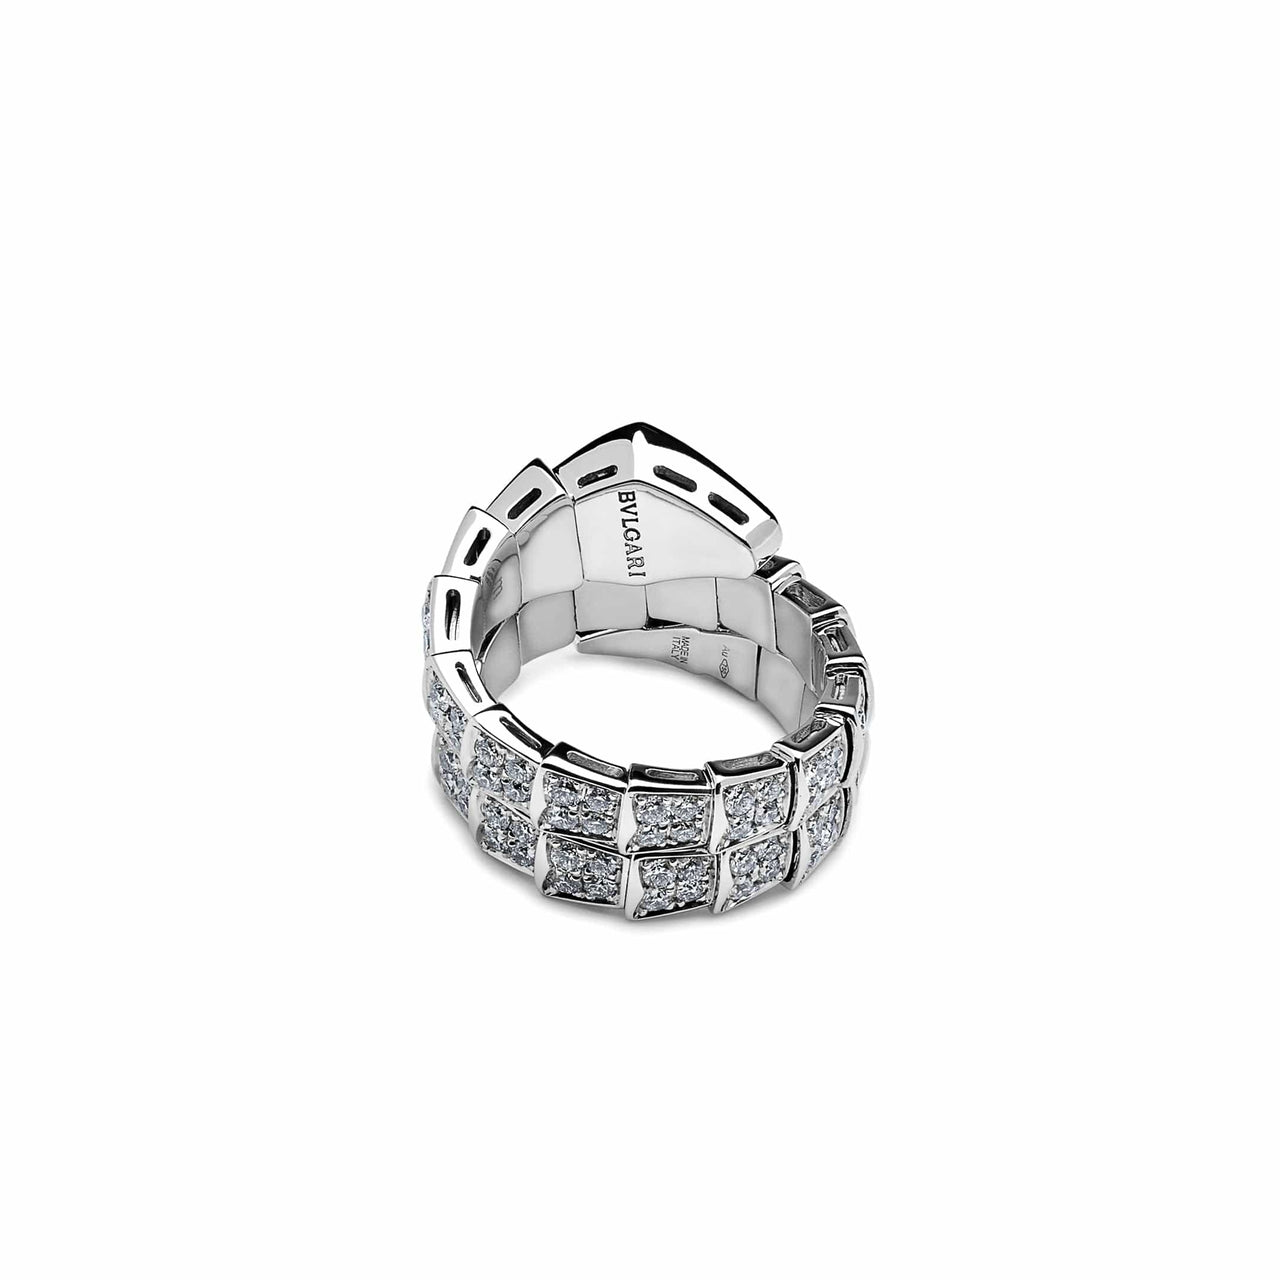 Rings Bvlgari Serpenti Viper White Gold Pave Diamond Two-coil Ring 345226 Wrist Aficionado